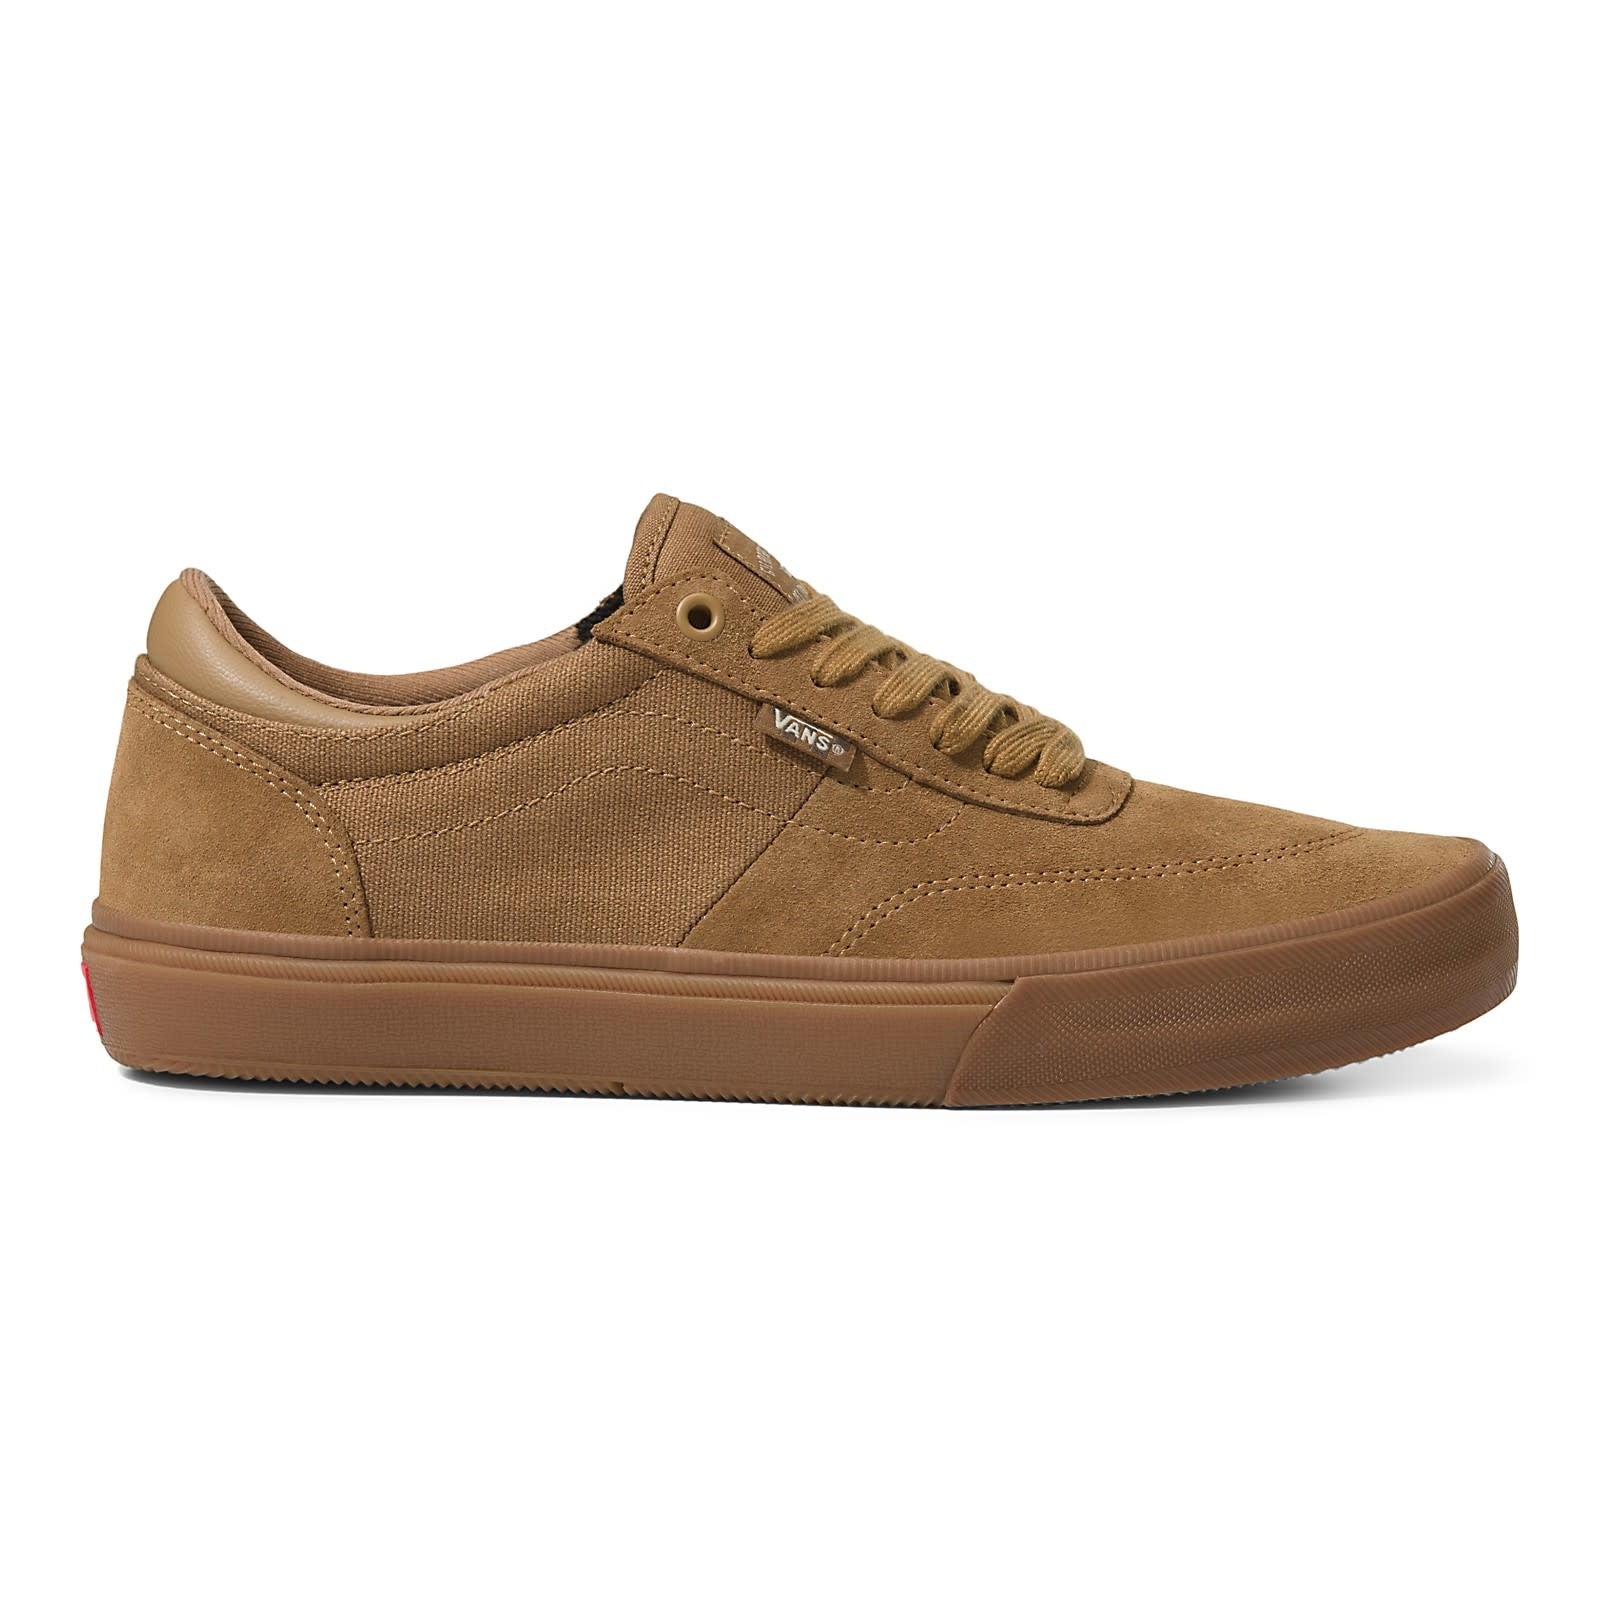 Vans Gilbert Crockett Shoes Brown/Gum – Shredz Shop Skate